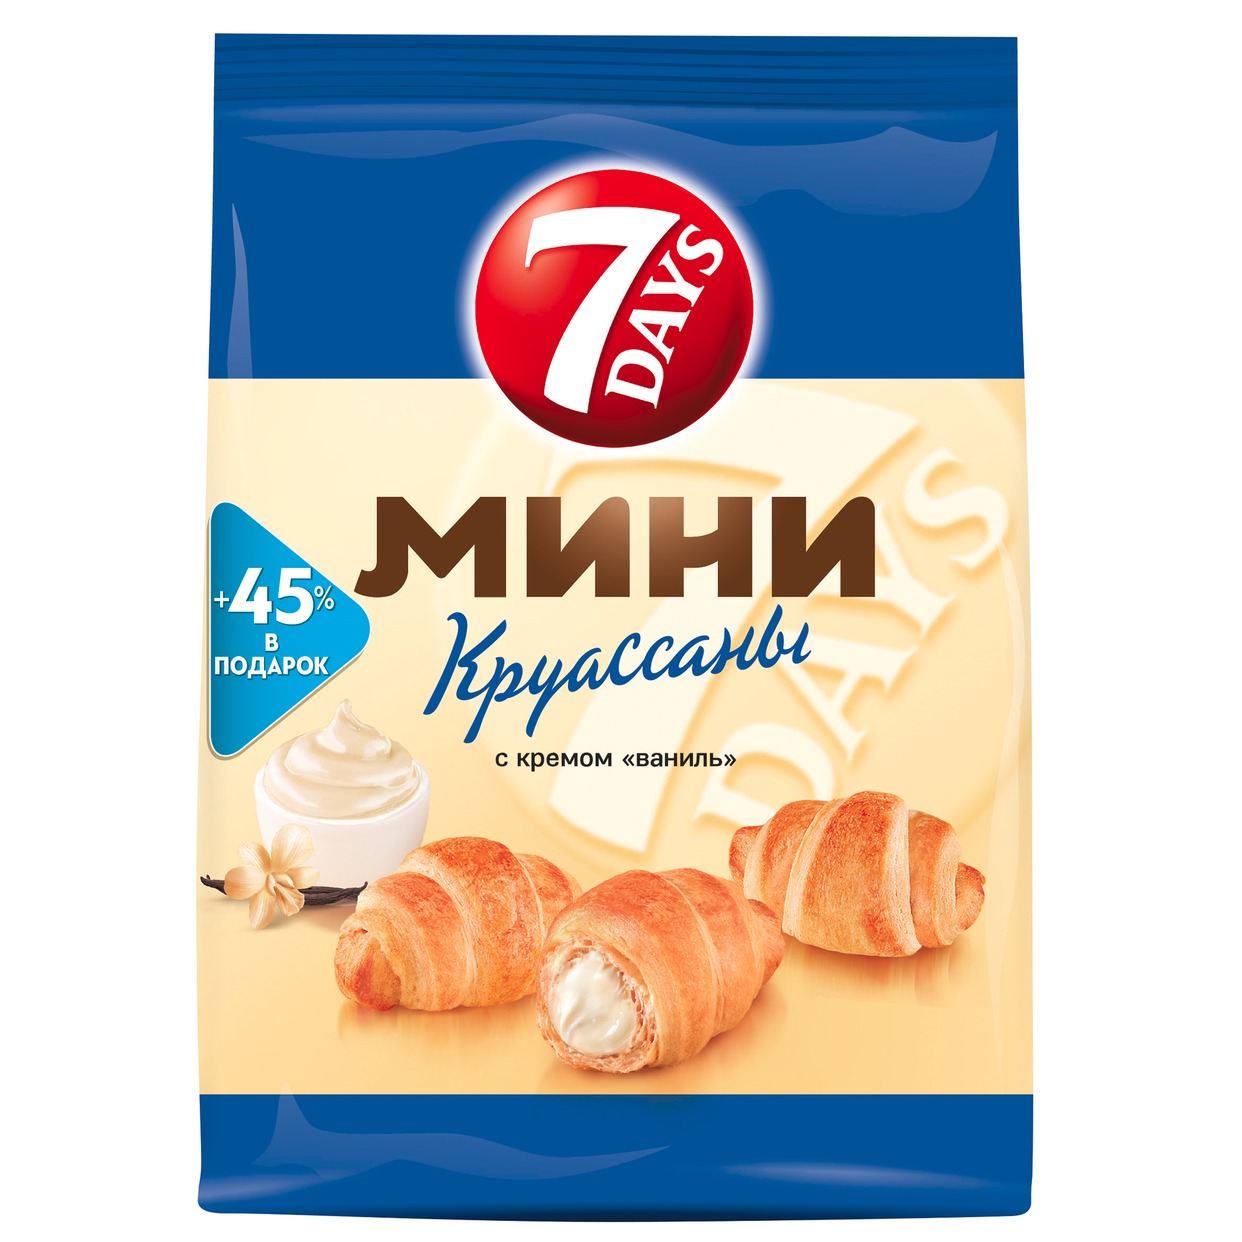 7DAYS Мини Круассаны с кремом со вкусом "Ваниль" 105г.